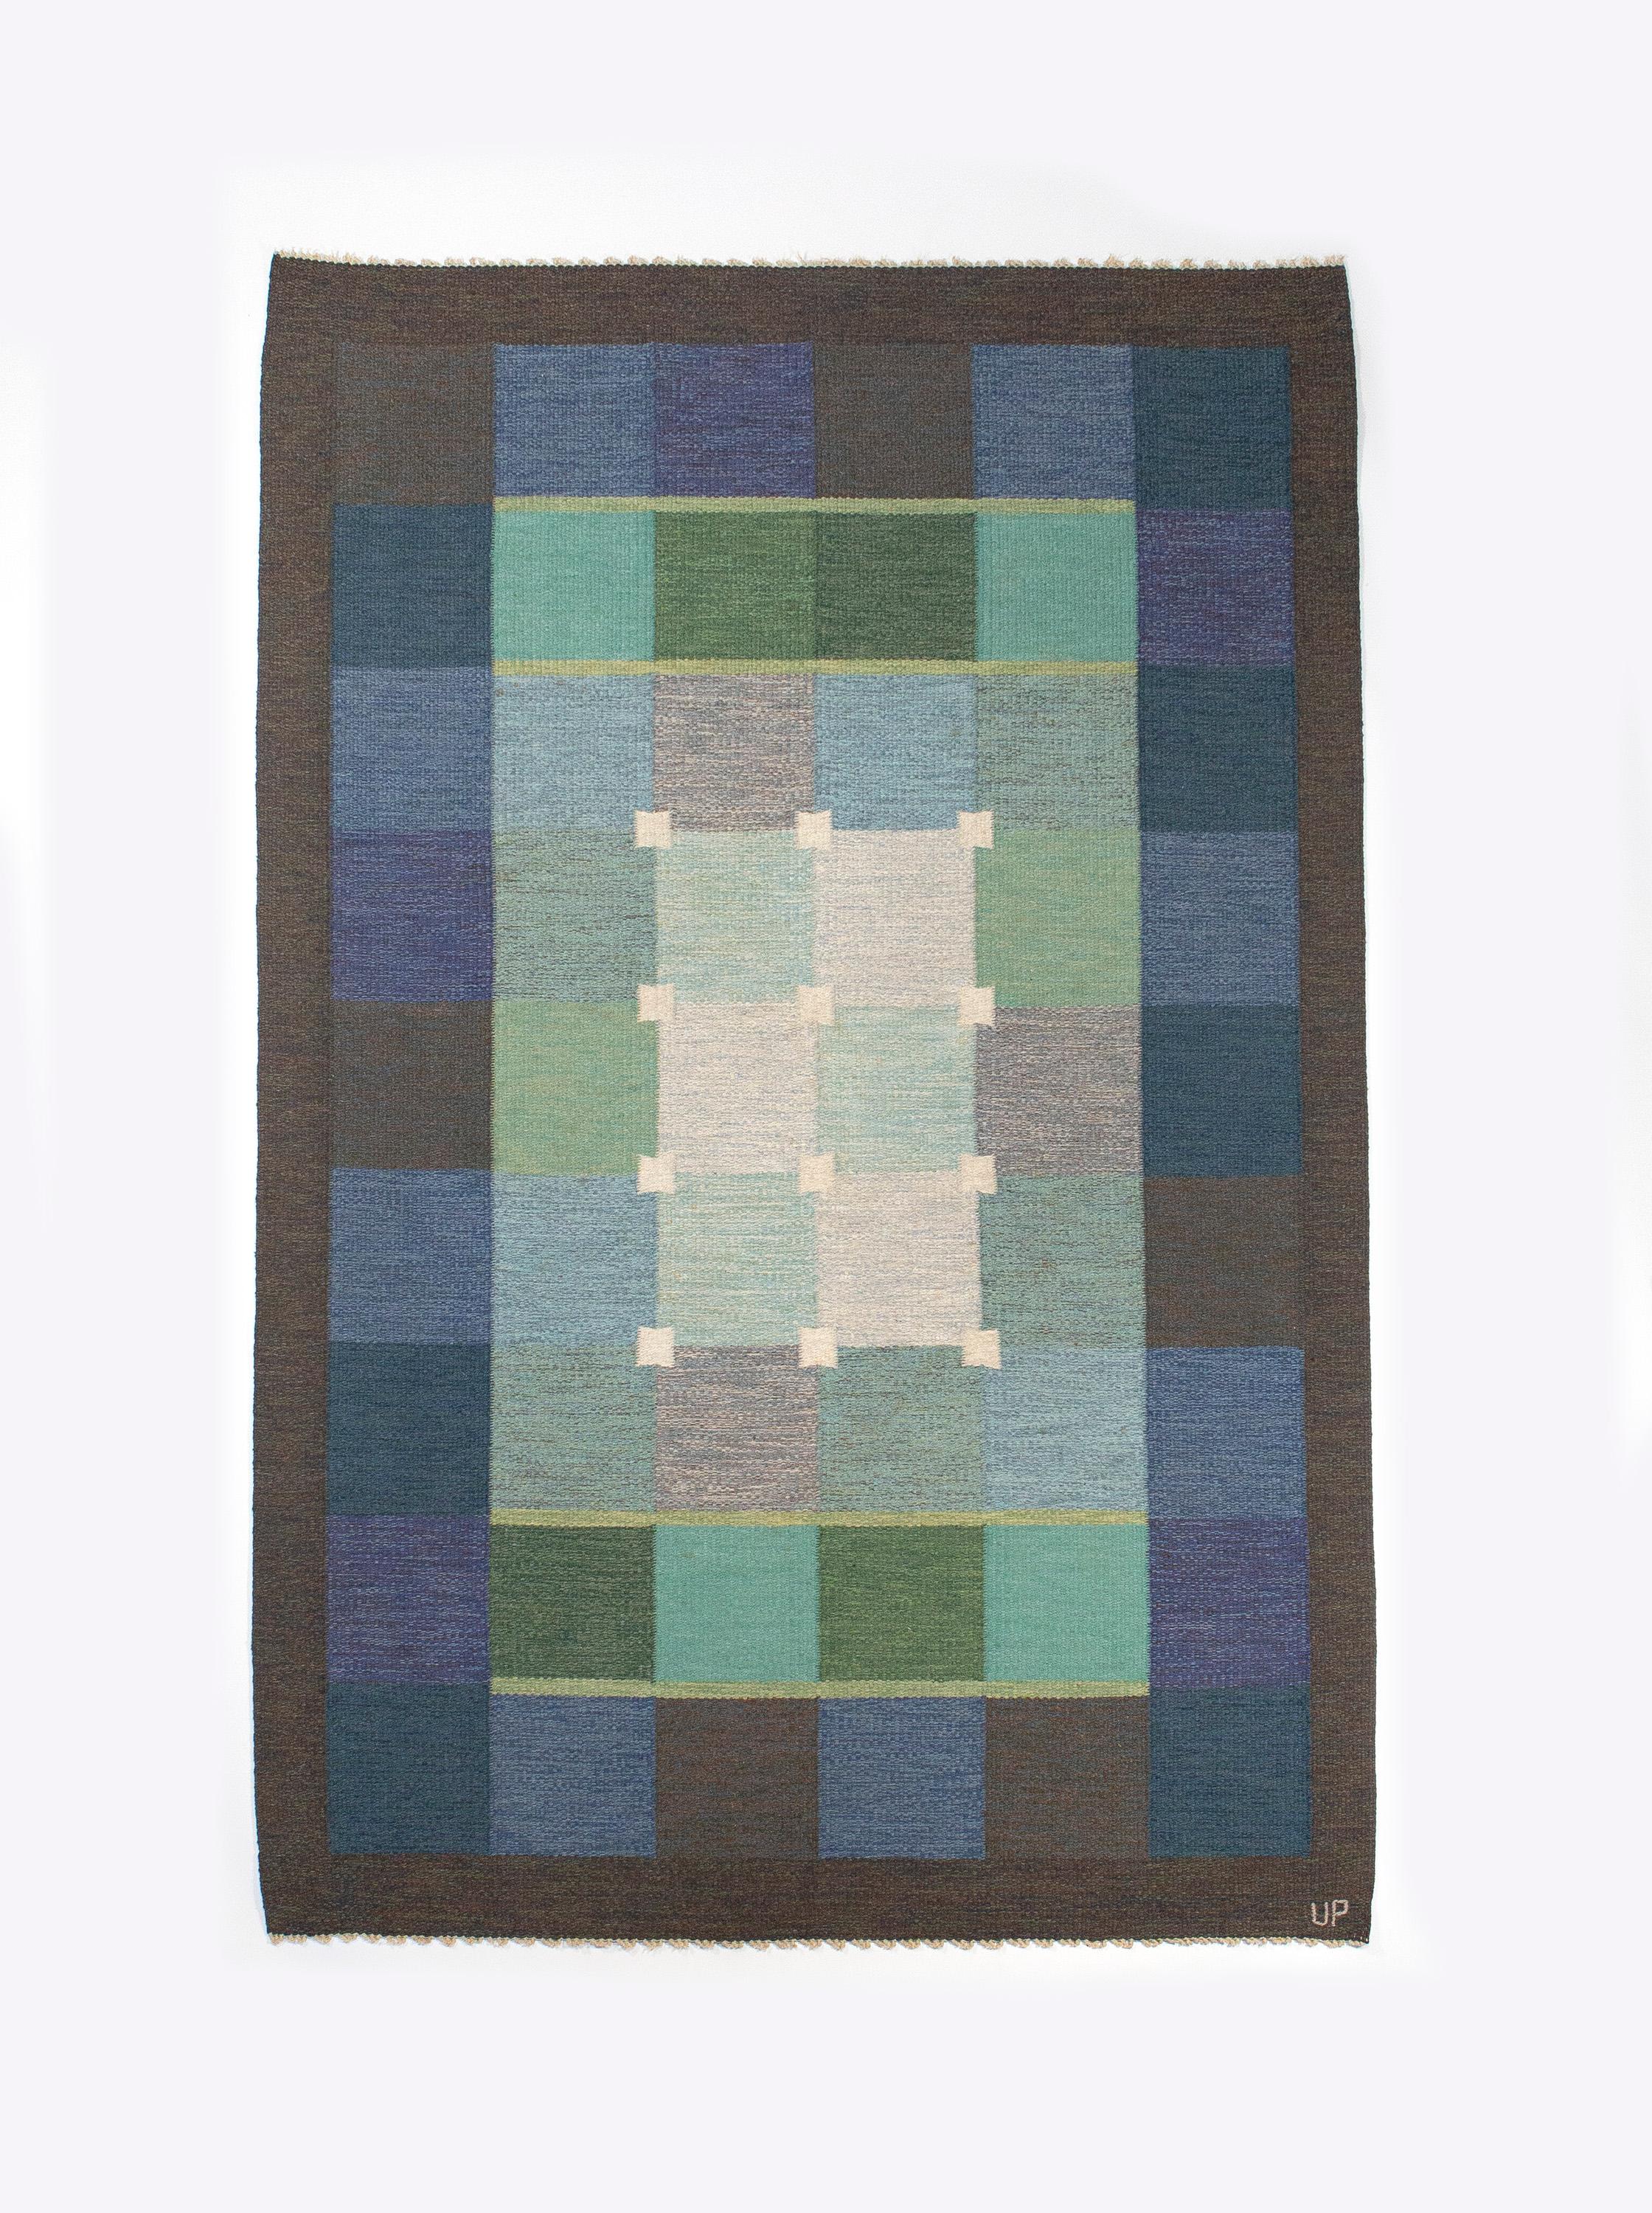 Ulla Parkdal blue + purple Swedish flate weave rug, Sweden 1960s, measures: 7' 10